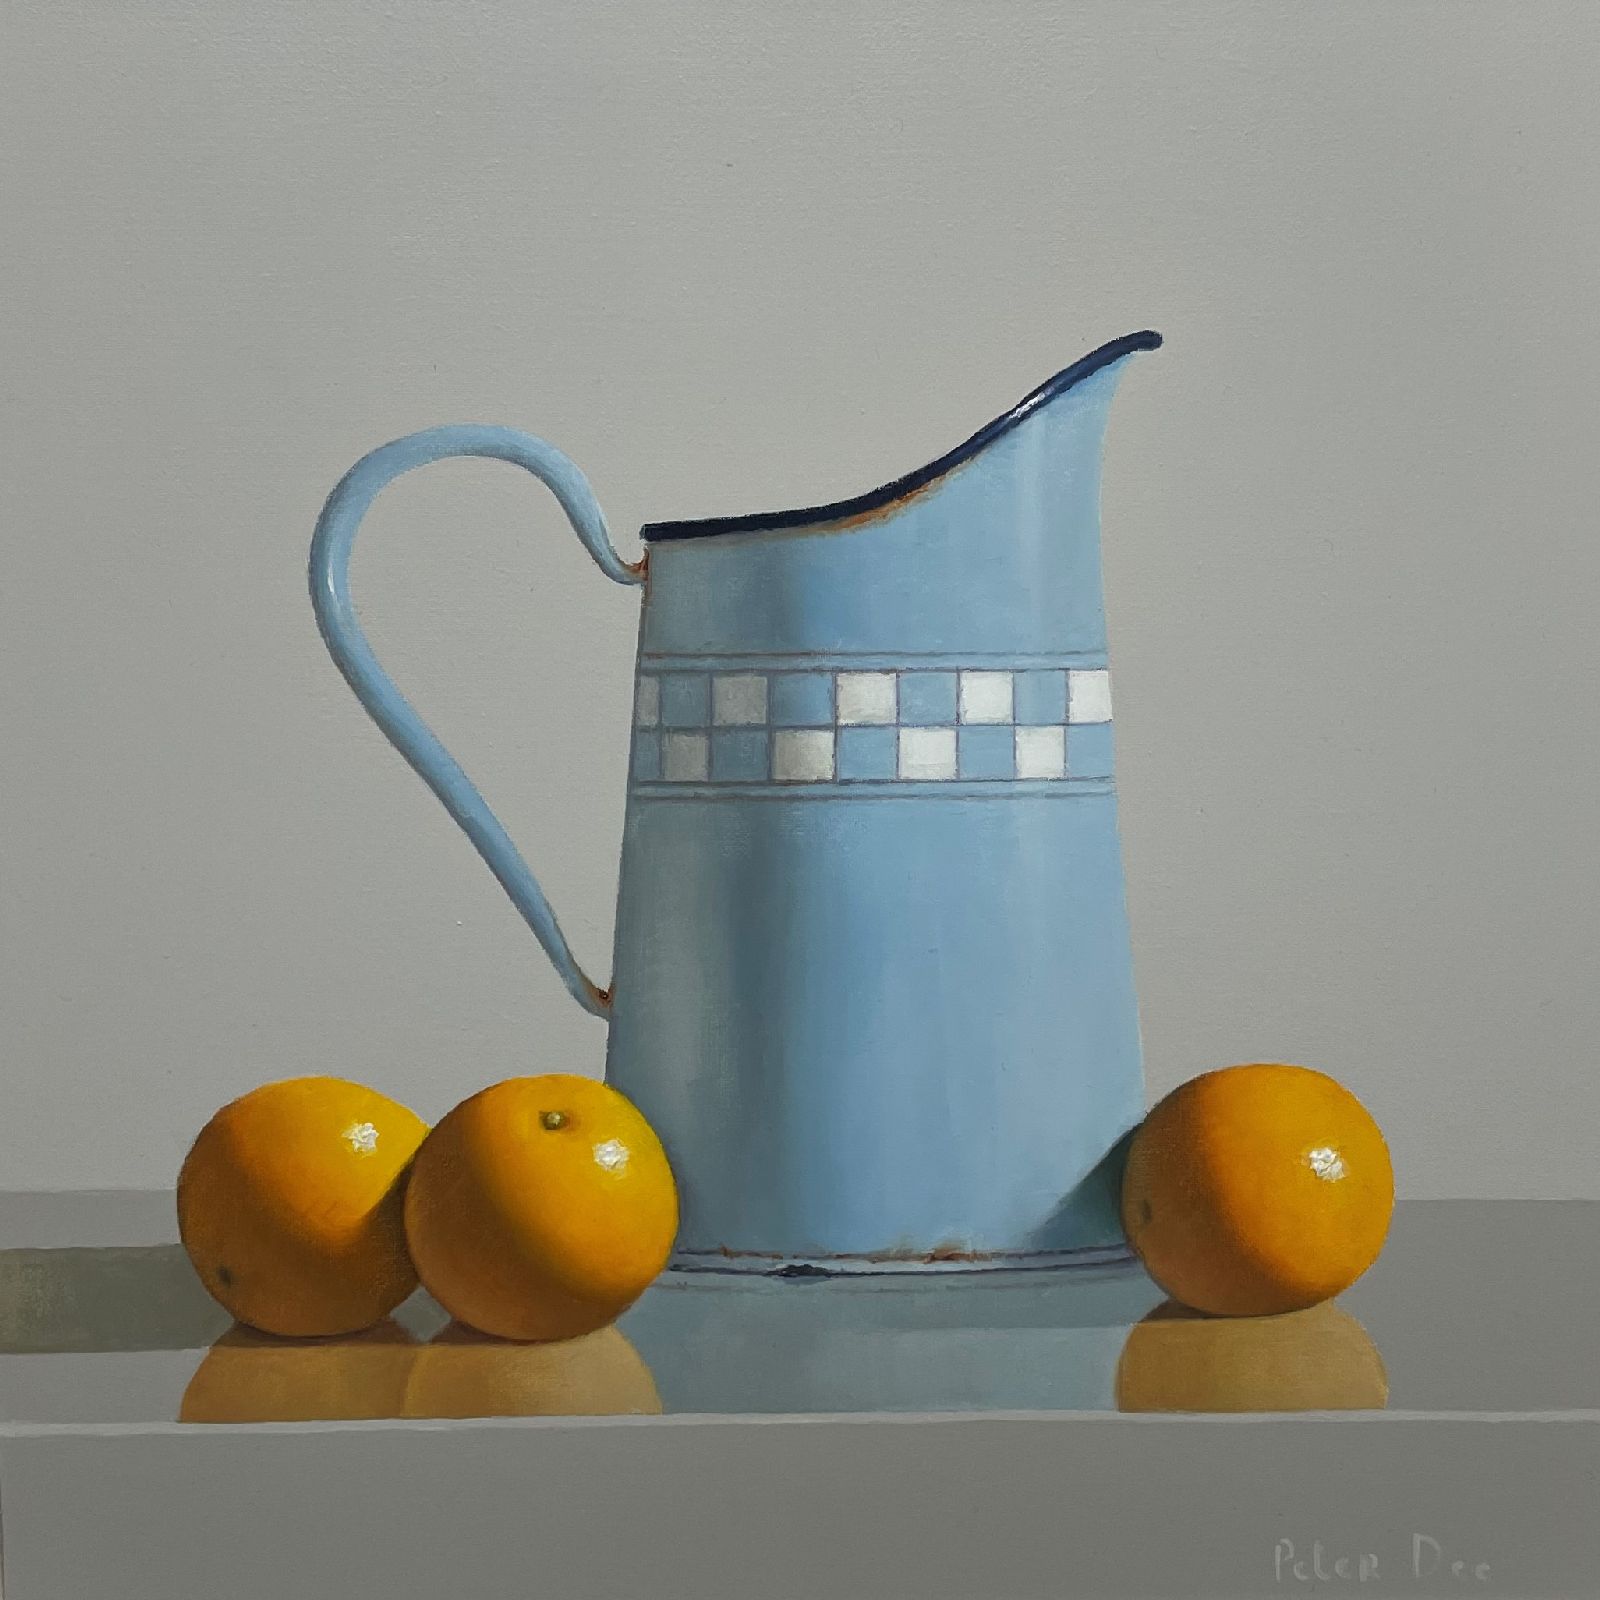 Peter Dee - Vintage  Enamelware with Oranges